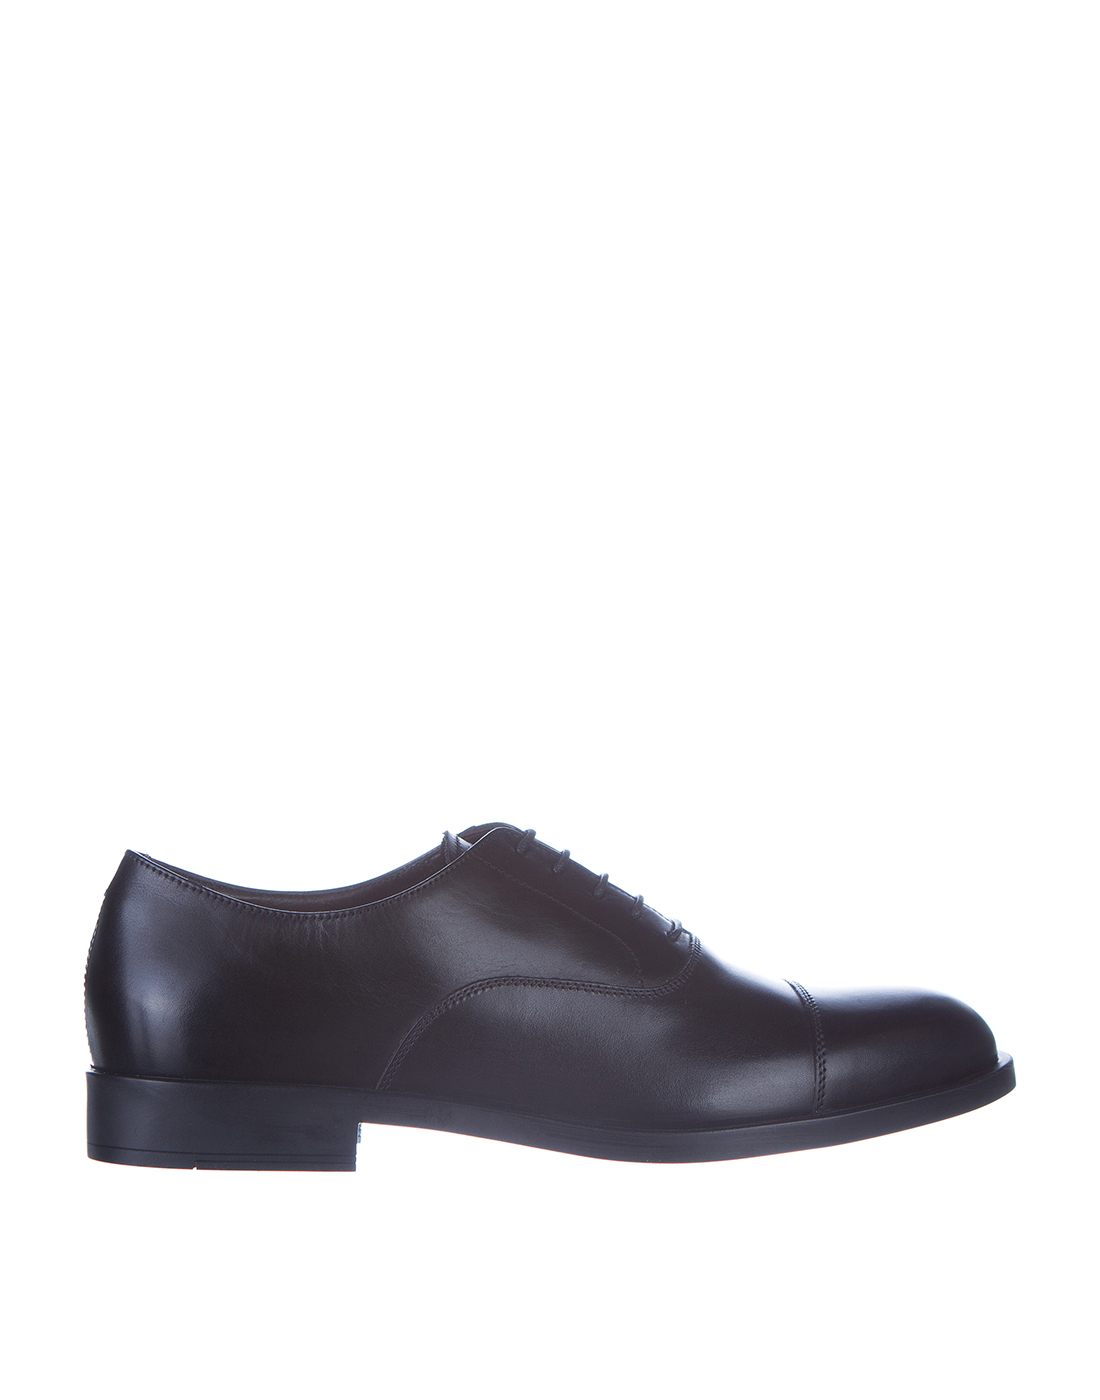 Туфли черные мужские Fratelli Rossetti S46132/36601-1